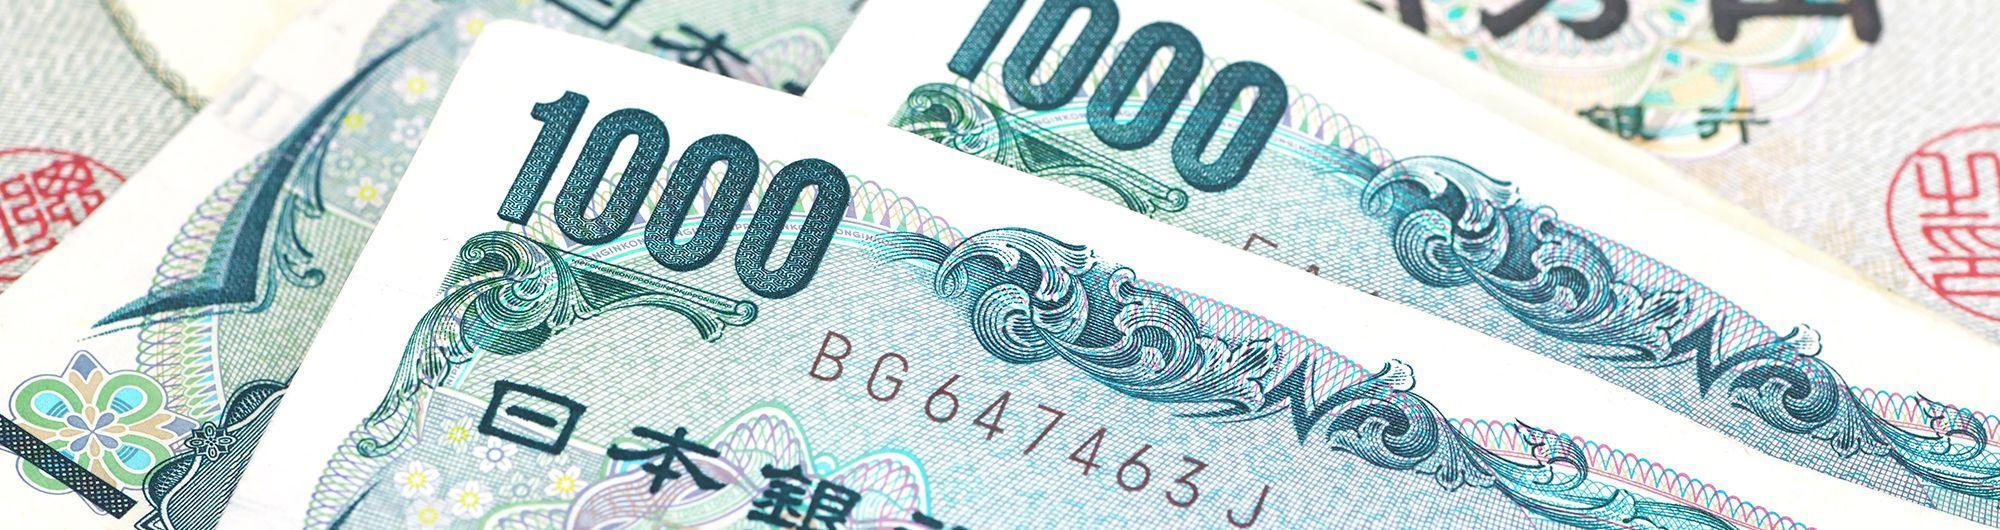 cédulas de dinheiro chinês